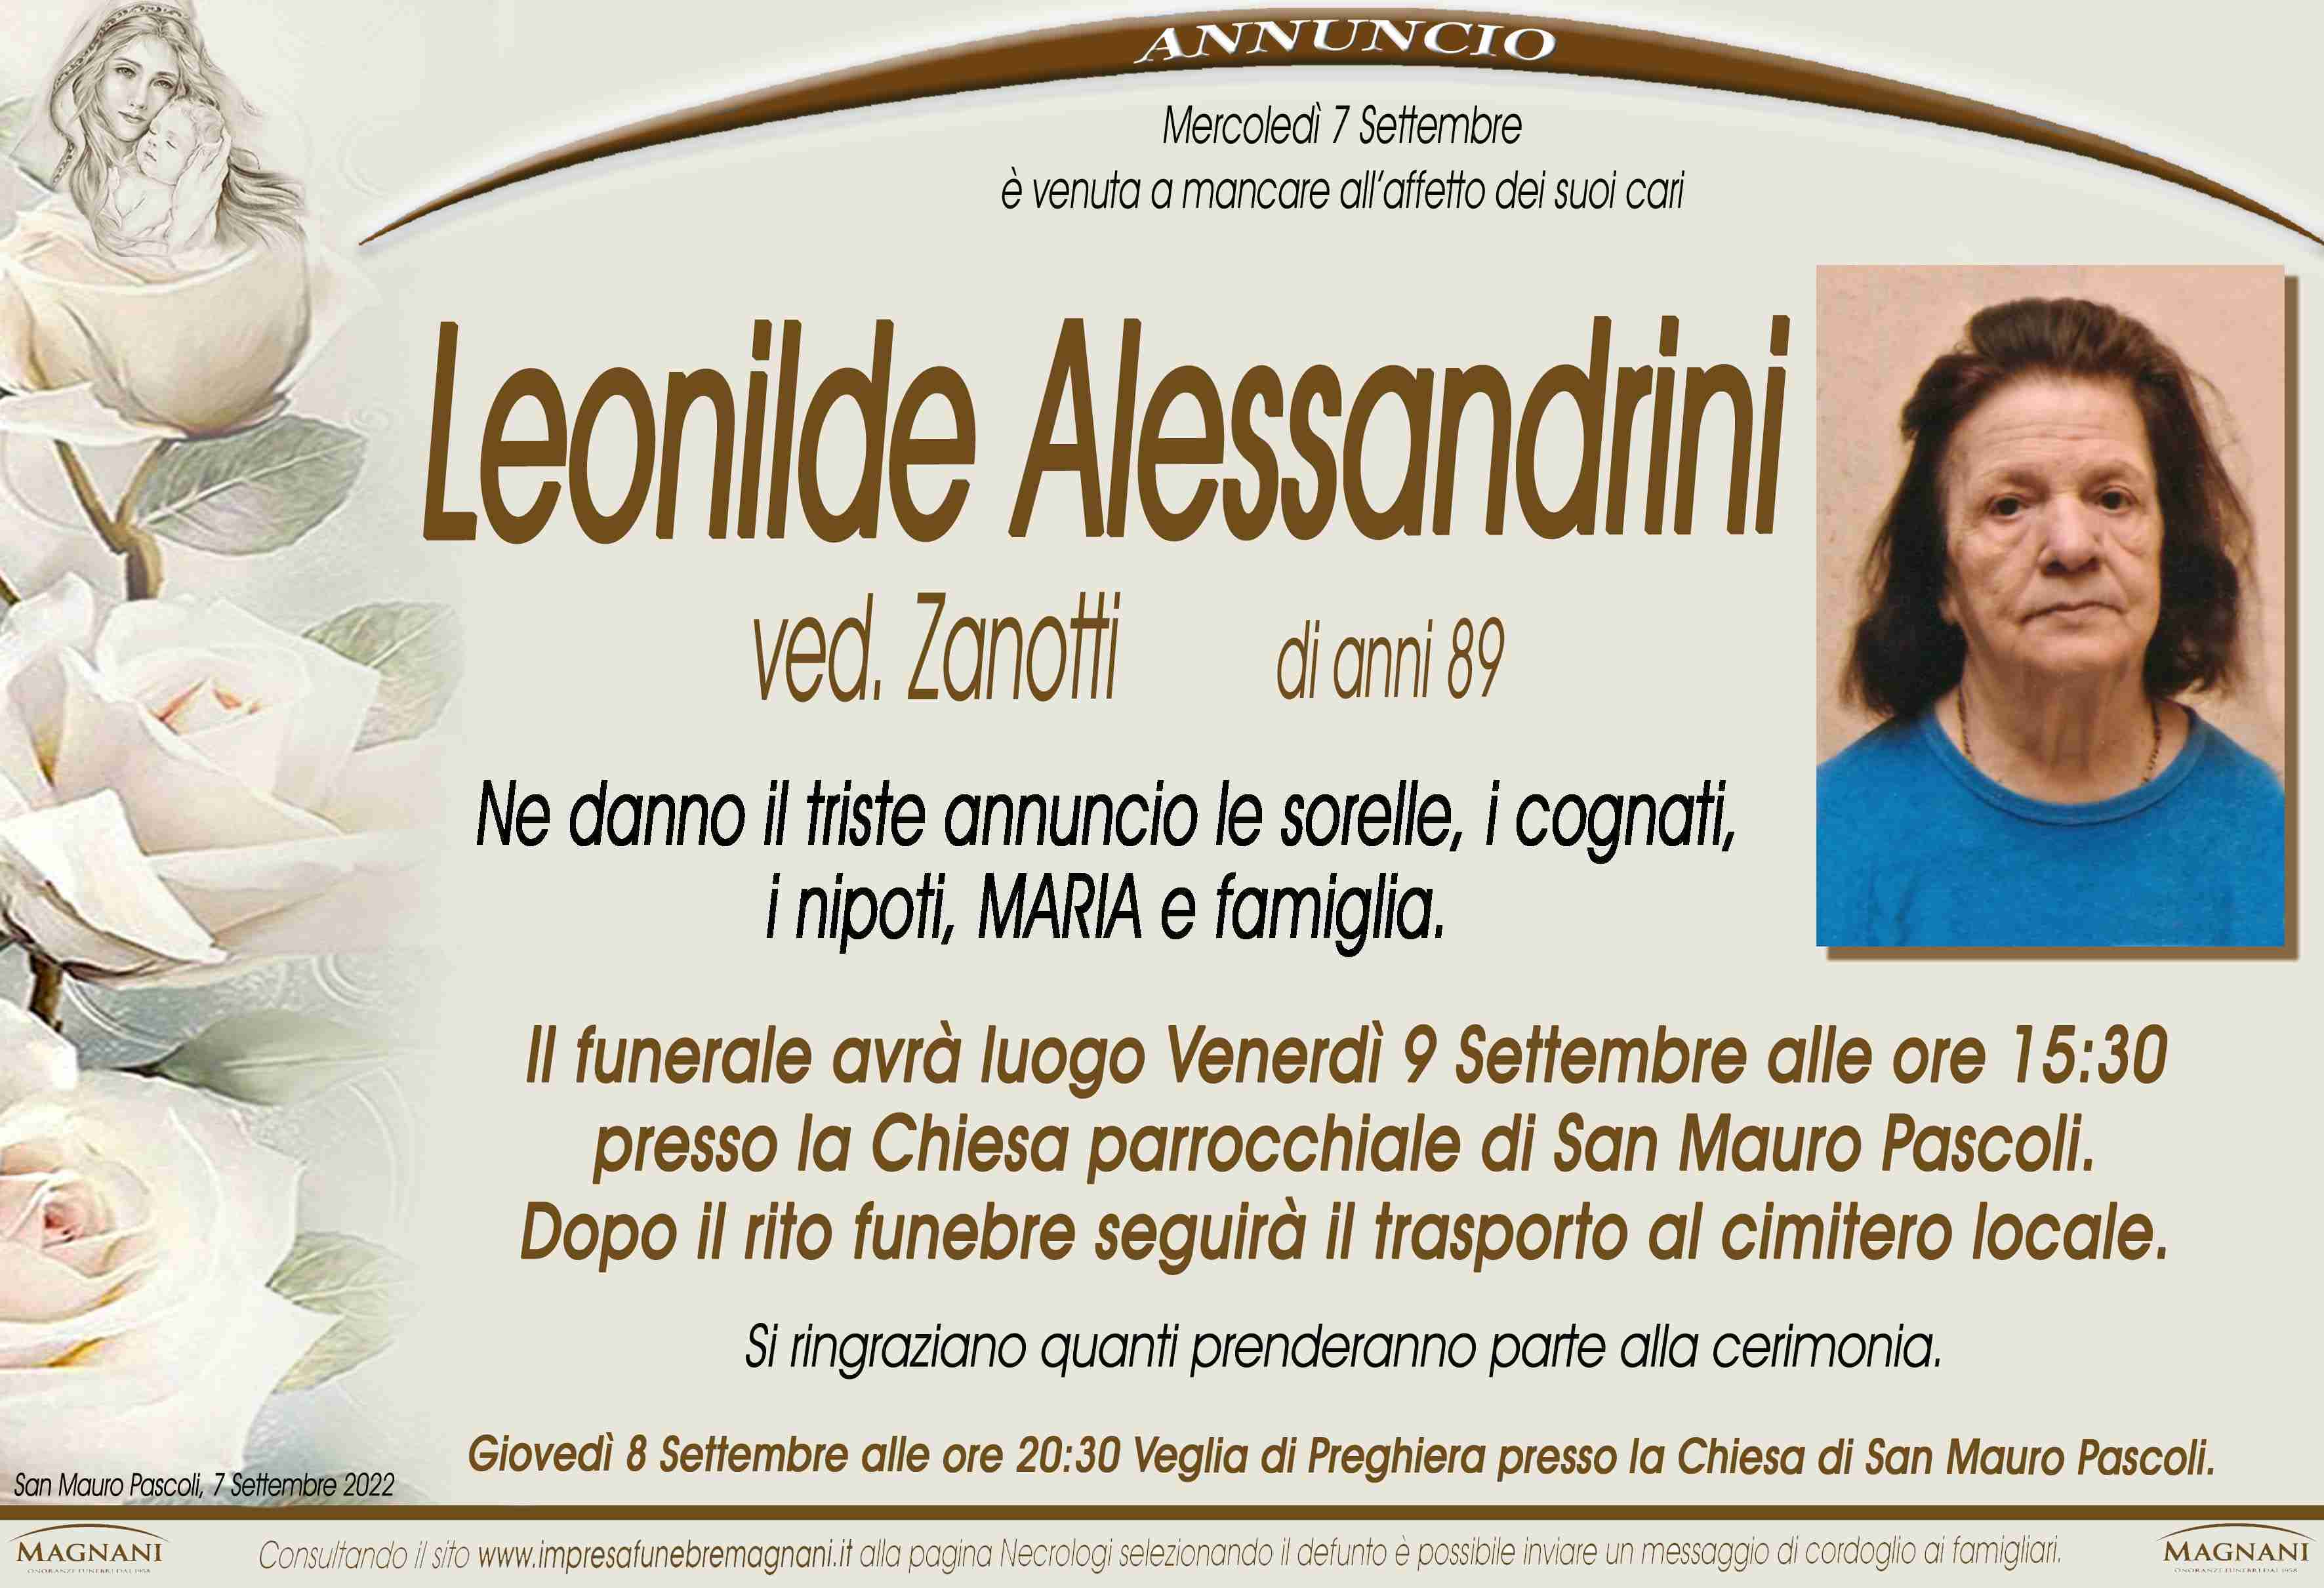 Leonilde Alessandrini